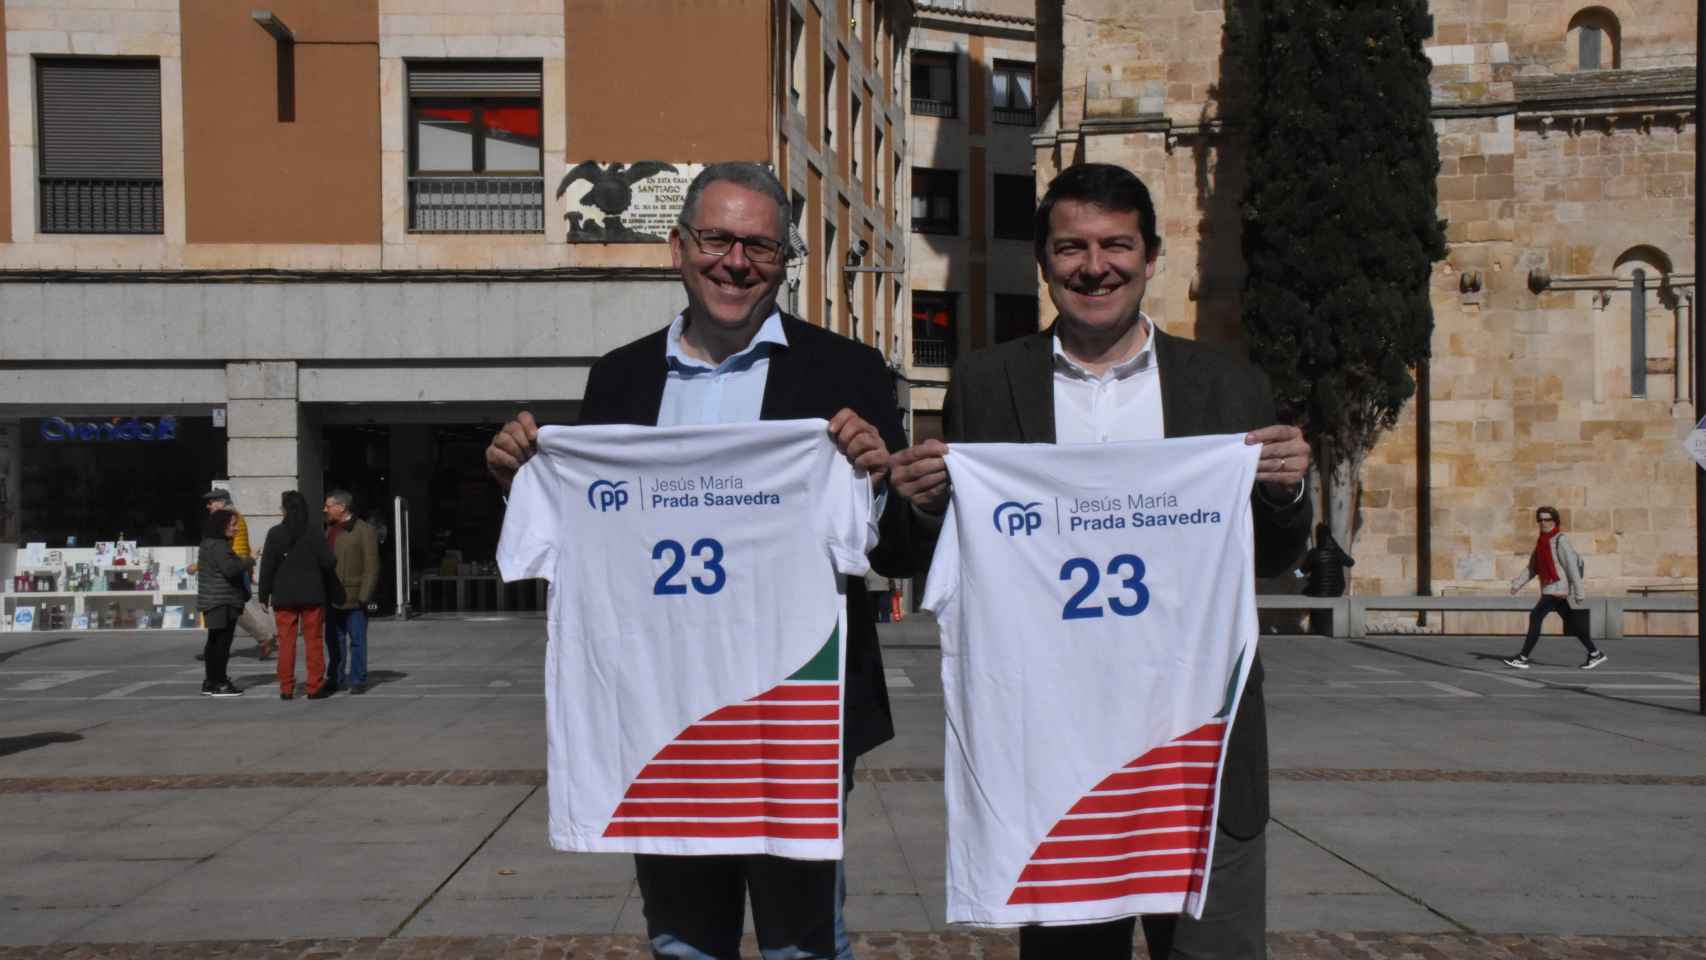 Alfonso Fernández Mañueco y Jesús María Prada, con la camiseta promocional para la campaña